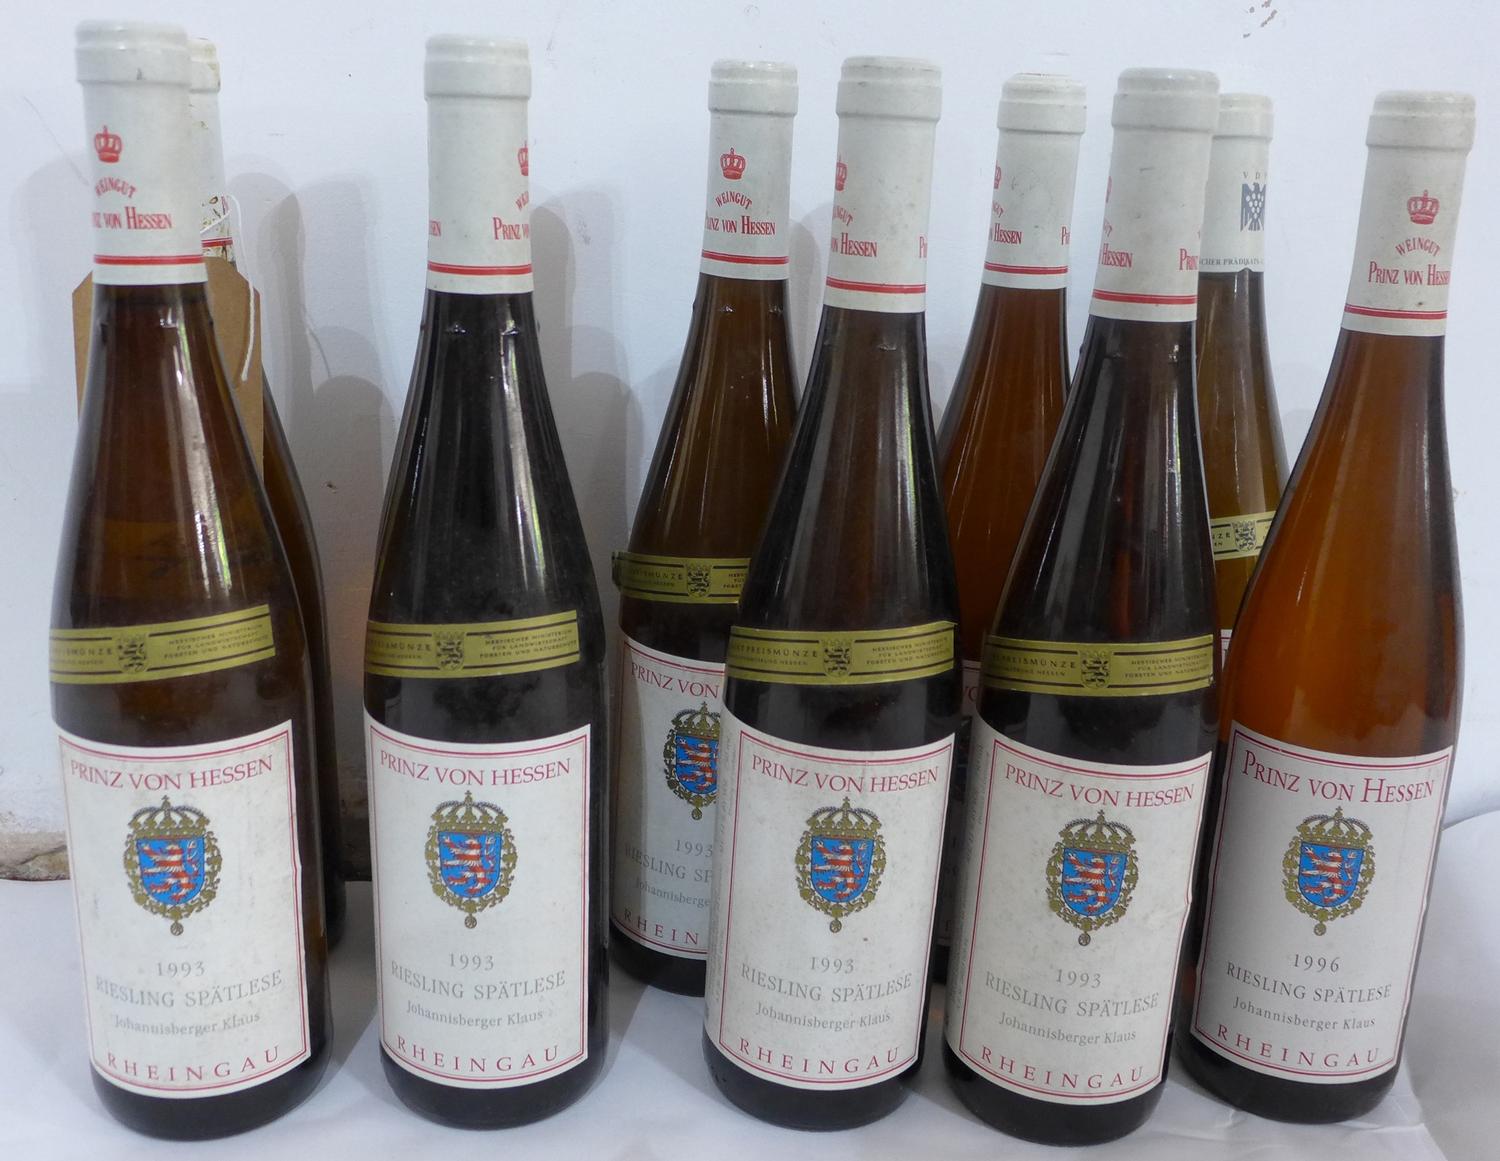 Prinz von Hessen, 1993, Riesling Spätlese, Johannisberger Klaus, 10 bottles